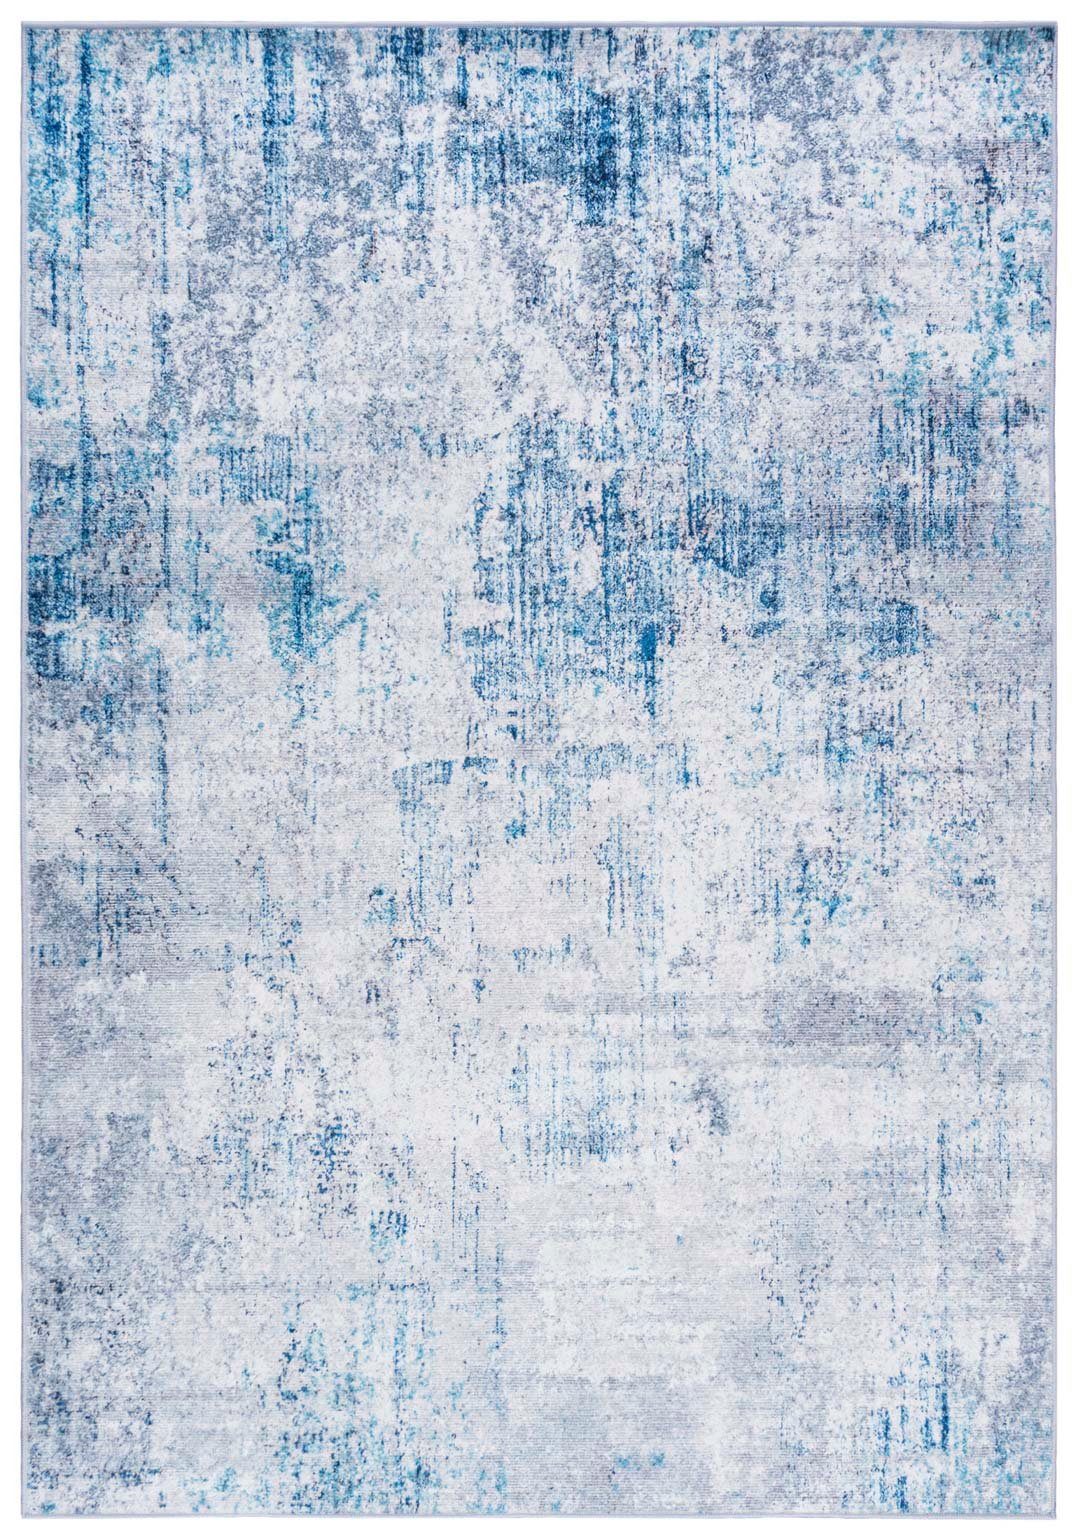 Designteppich Modern Teppich Wohnzimmerteppich Abstrakt Vintage Blau Grau, Mazovia, 80 x 150 cm, Fußbodenheizung, Allergiker geeignet, Rutschfest